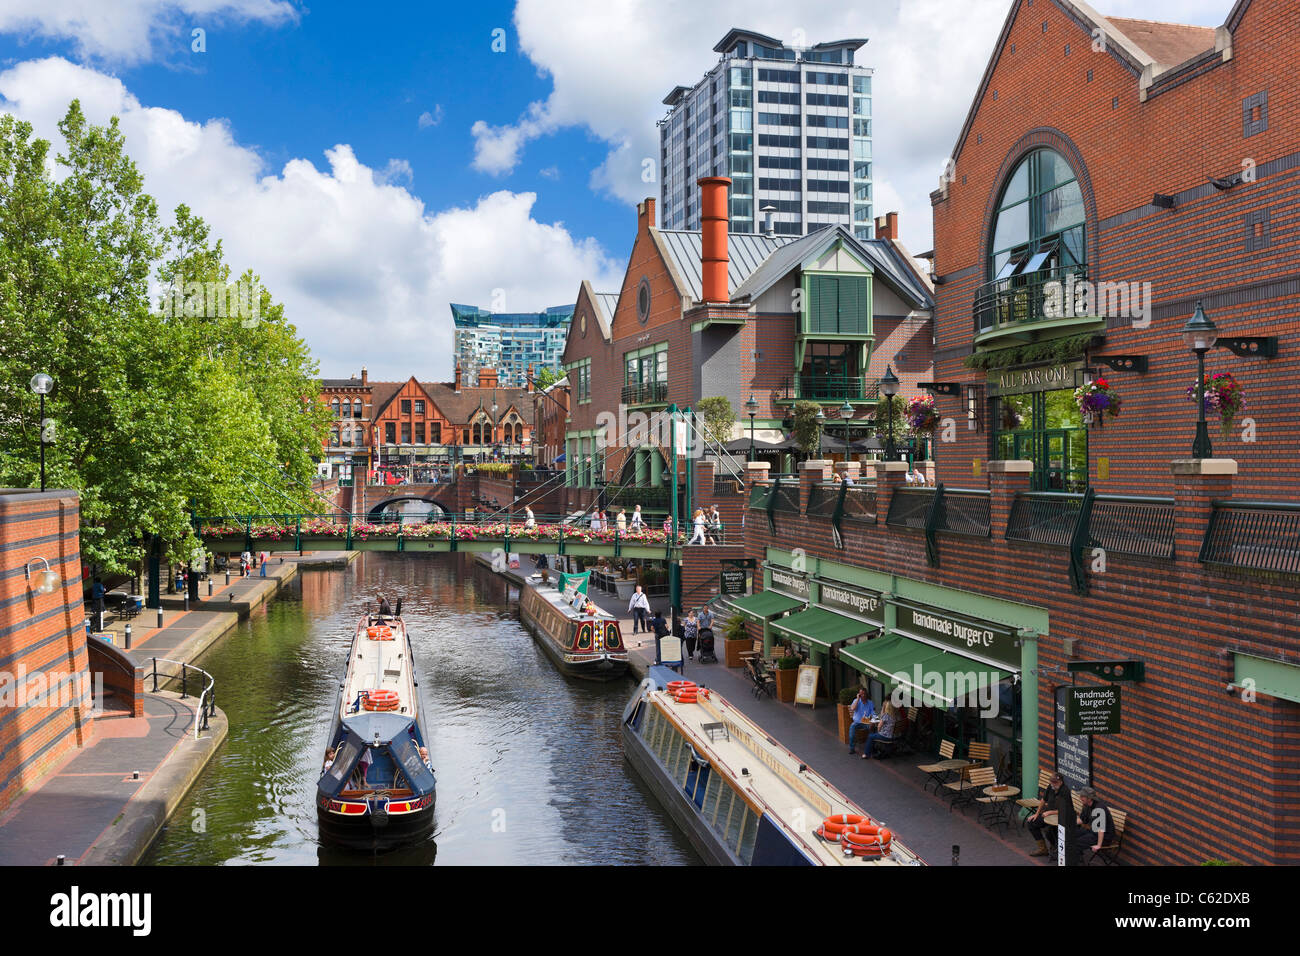 Narrowboats delante de los restaurantes en el canal, en Brindley Place, Birmingham, West Midlands, Inglaterra, Reino Unido. Foto de stock